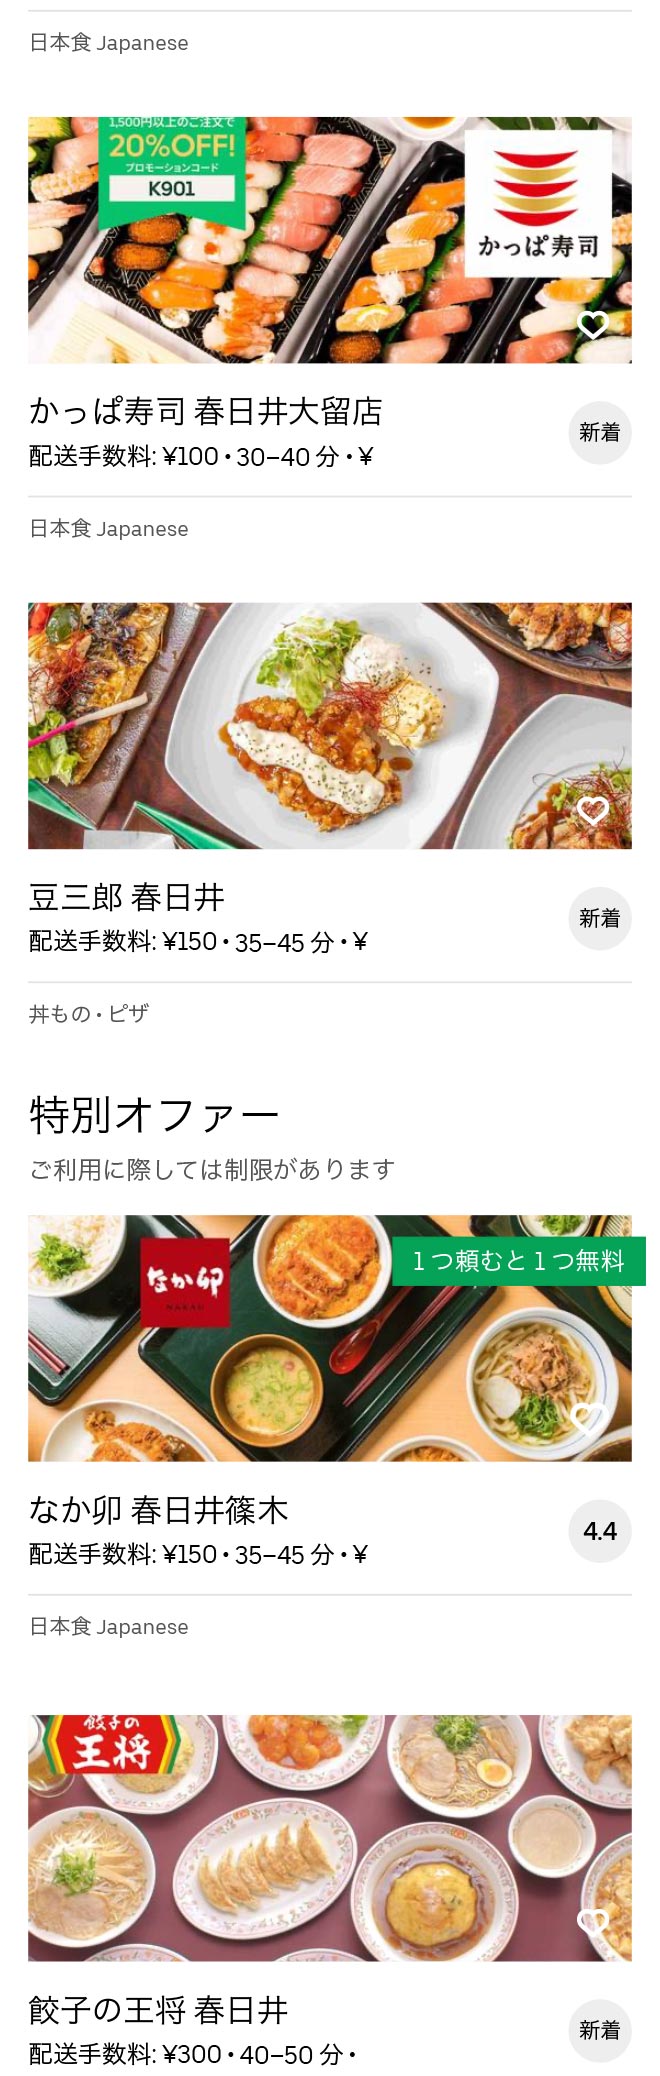 Jinryo menu 2010 03